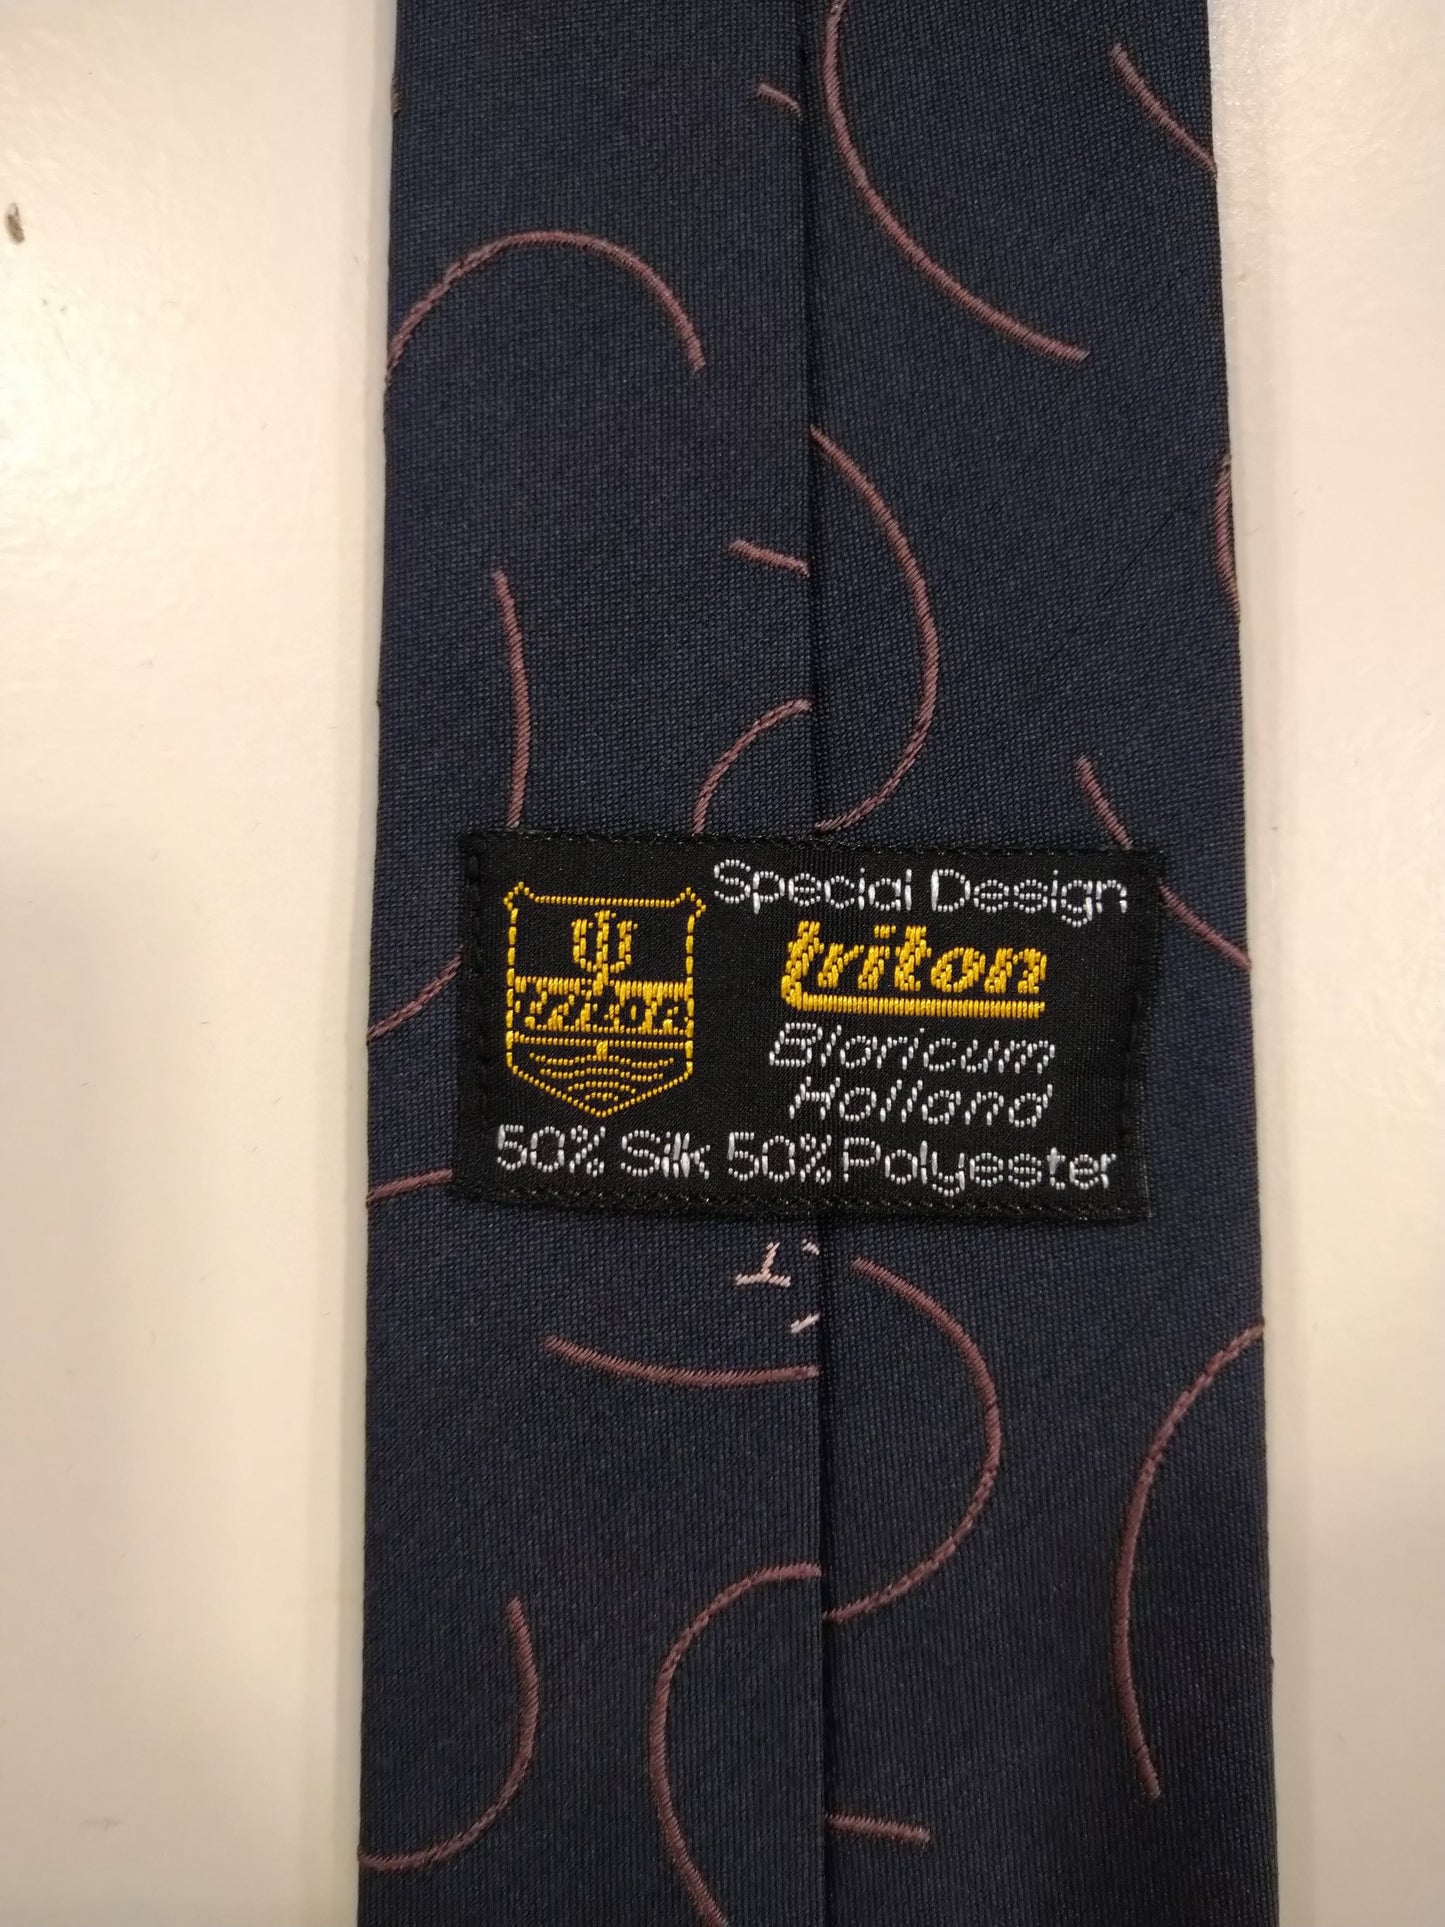 Triton Vintage poliéster / corbata de seda. Motivo rosa gris separado.